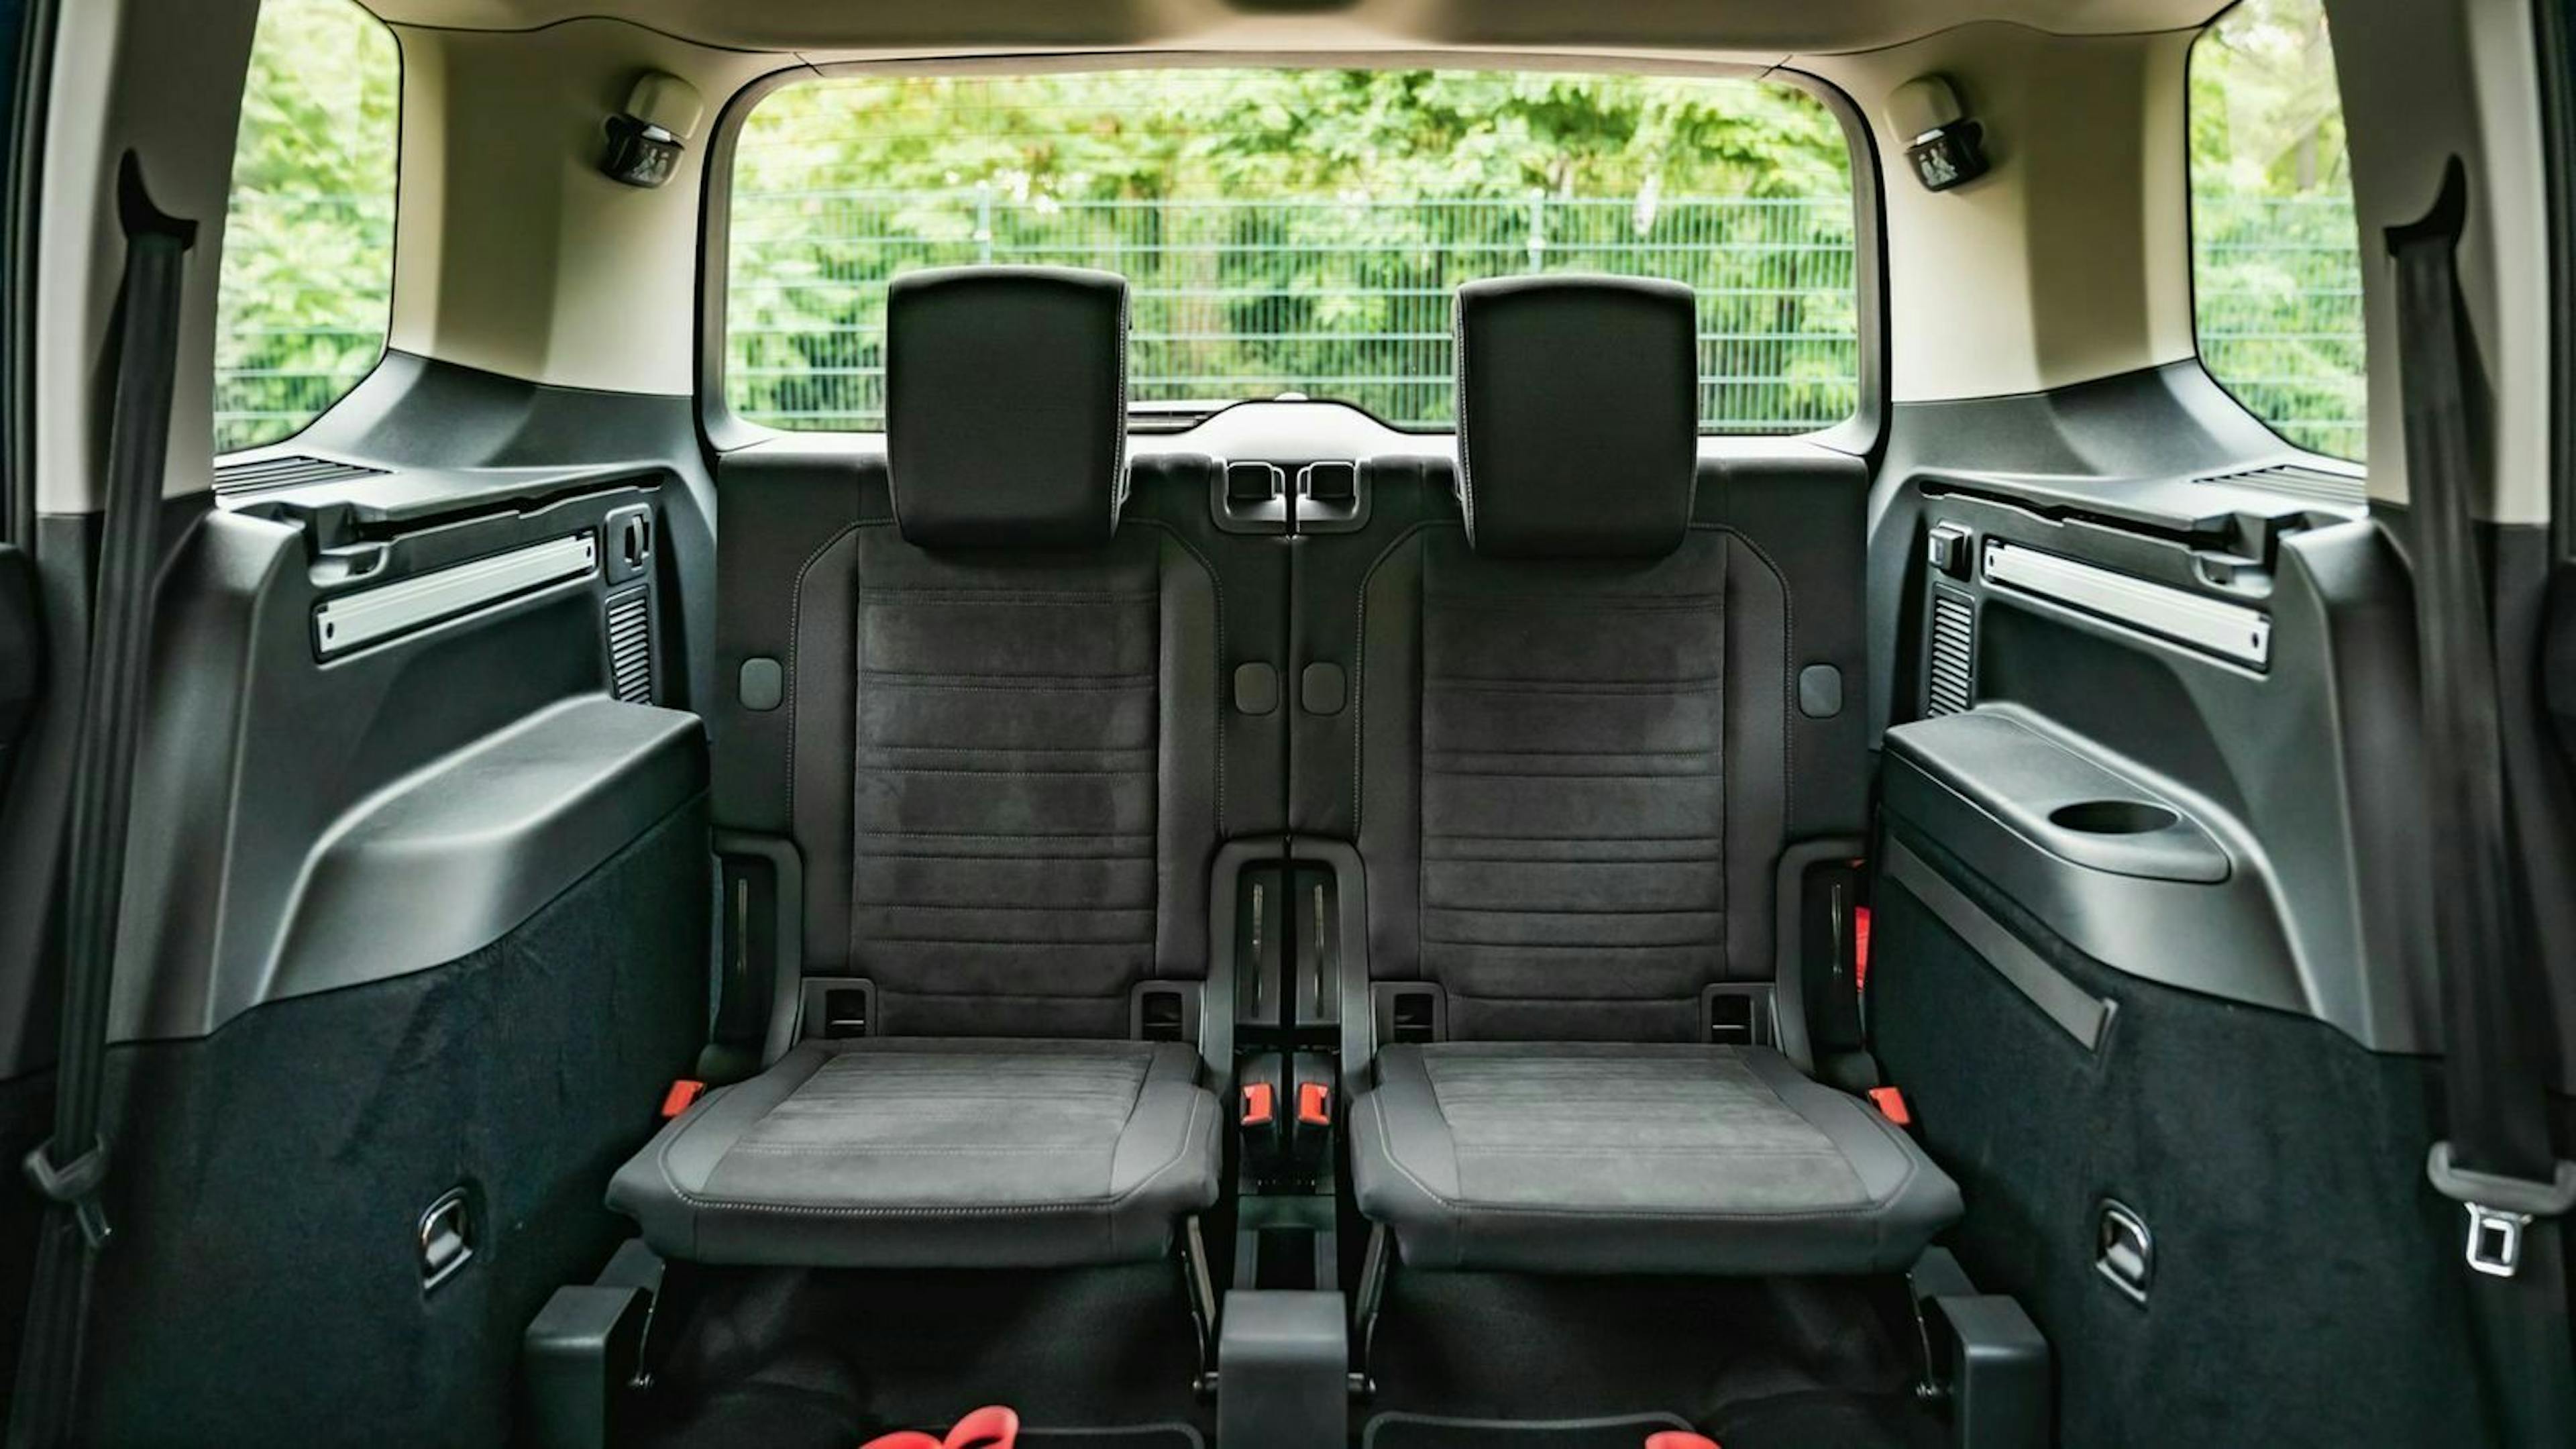 Zu sehen sind die Sitze aus Reihe drei des VW Touran